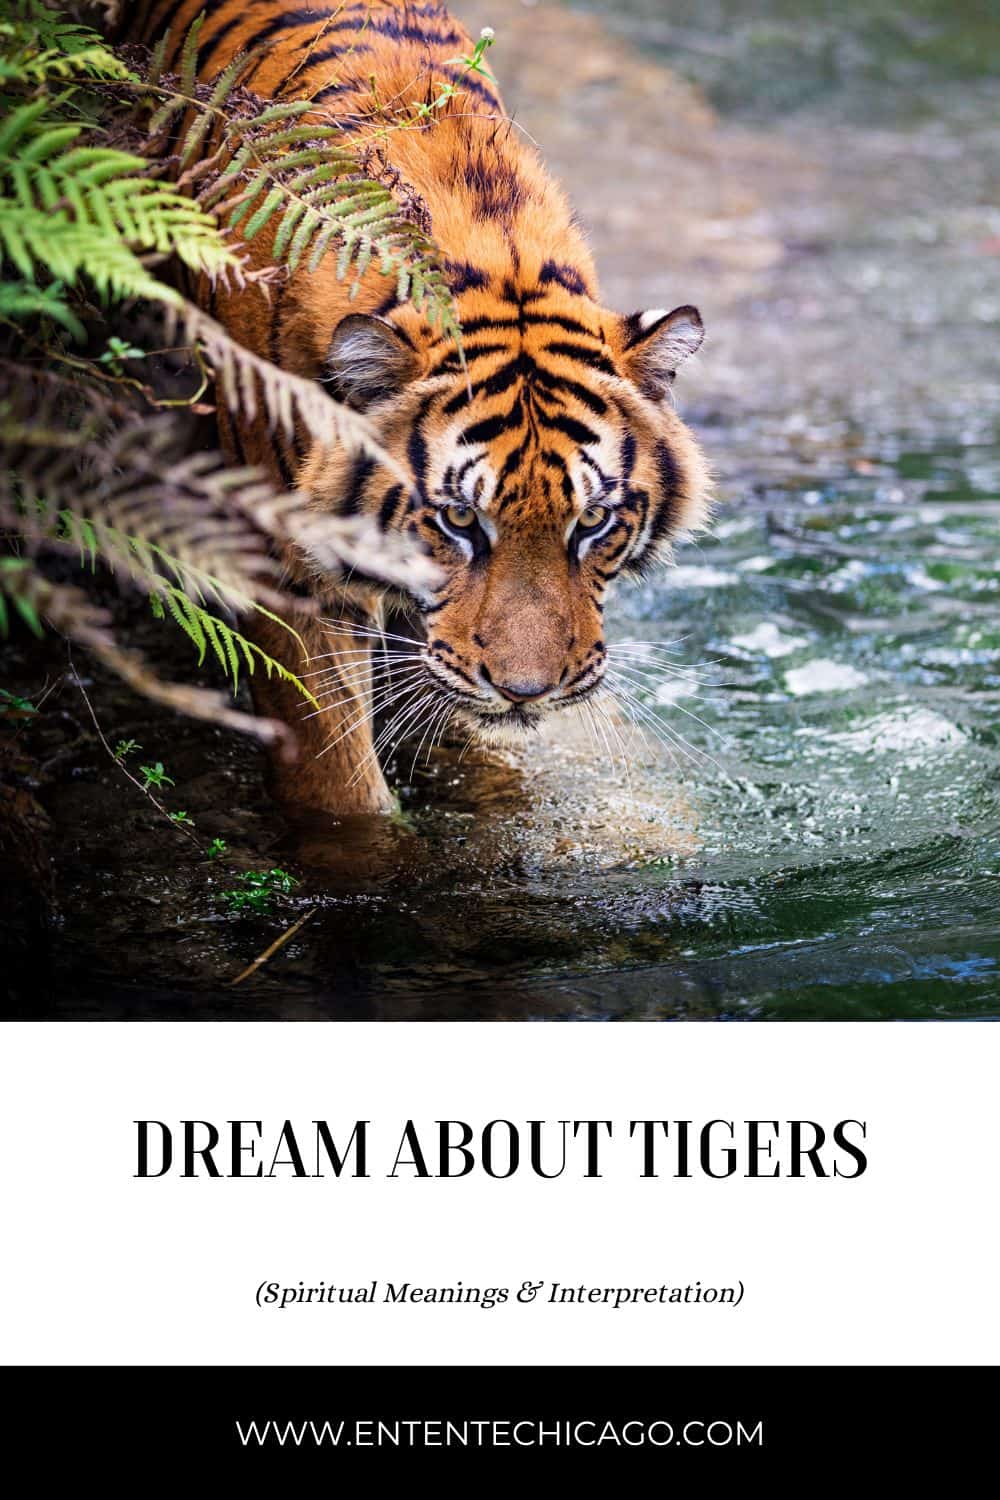  भागे हुए बाघ का सपना (सौभाग्यपूर्ण व्याख्या)